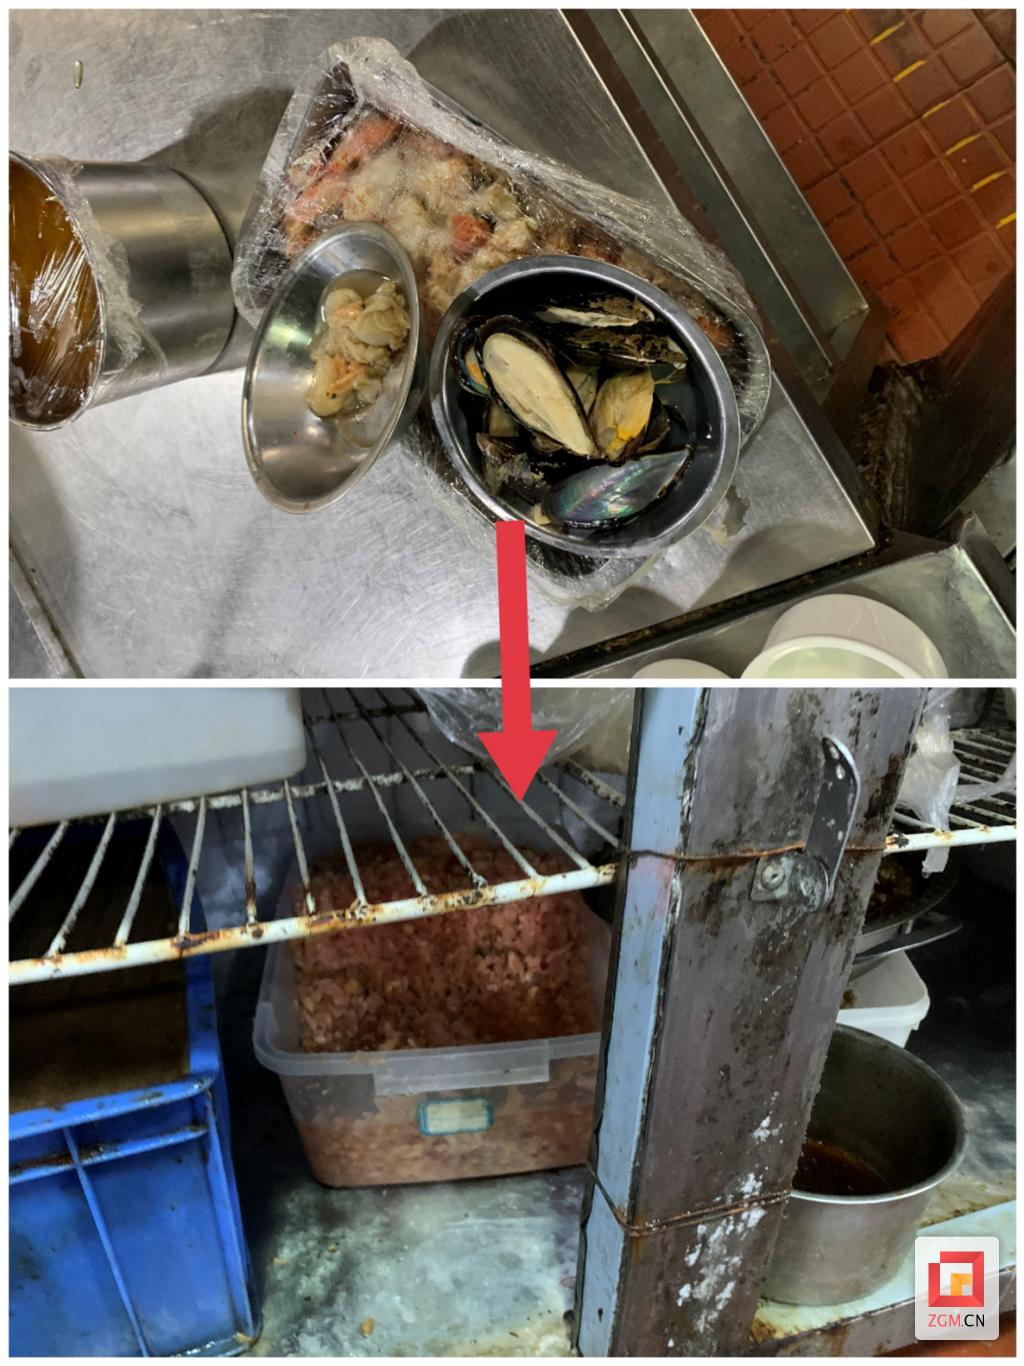 ▲冰箱应该打扫一下卫生了，生熟食品没分开存放，海产品未专柜存放，容易造成食材交叉污染。